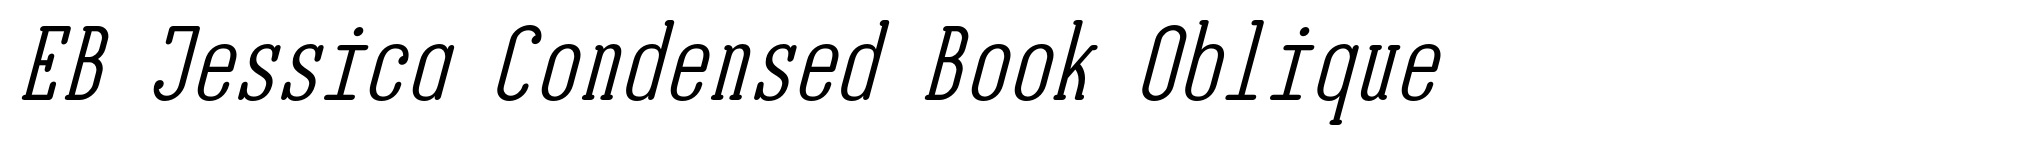 EB Jessica Condensed Book Oblique image